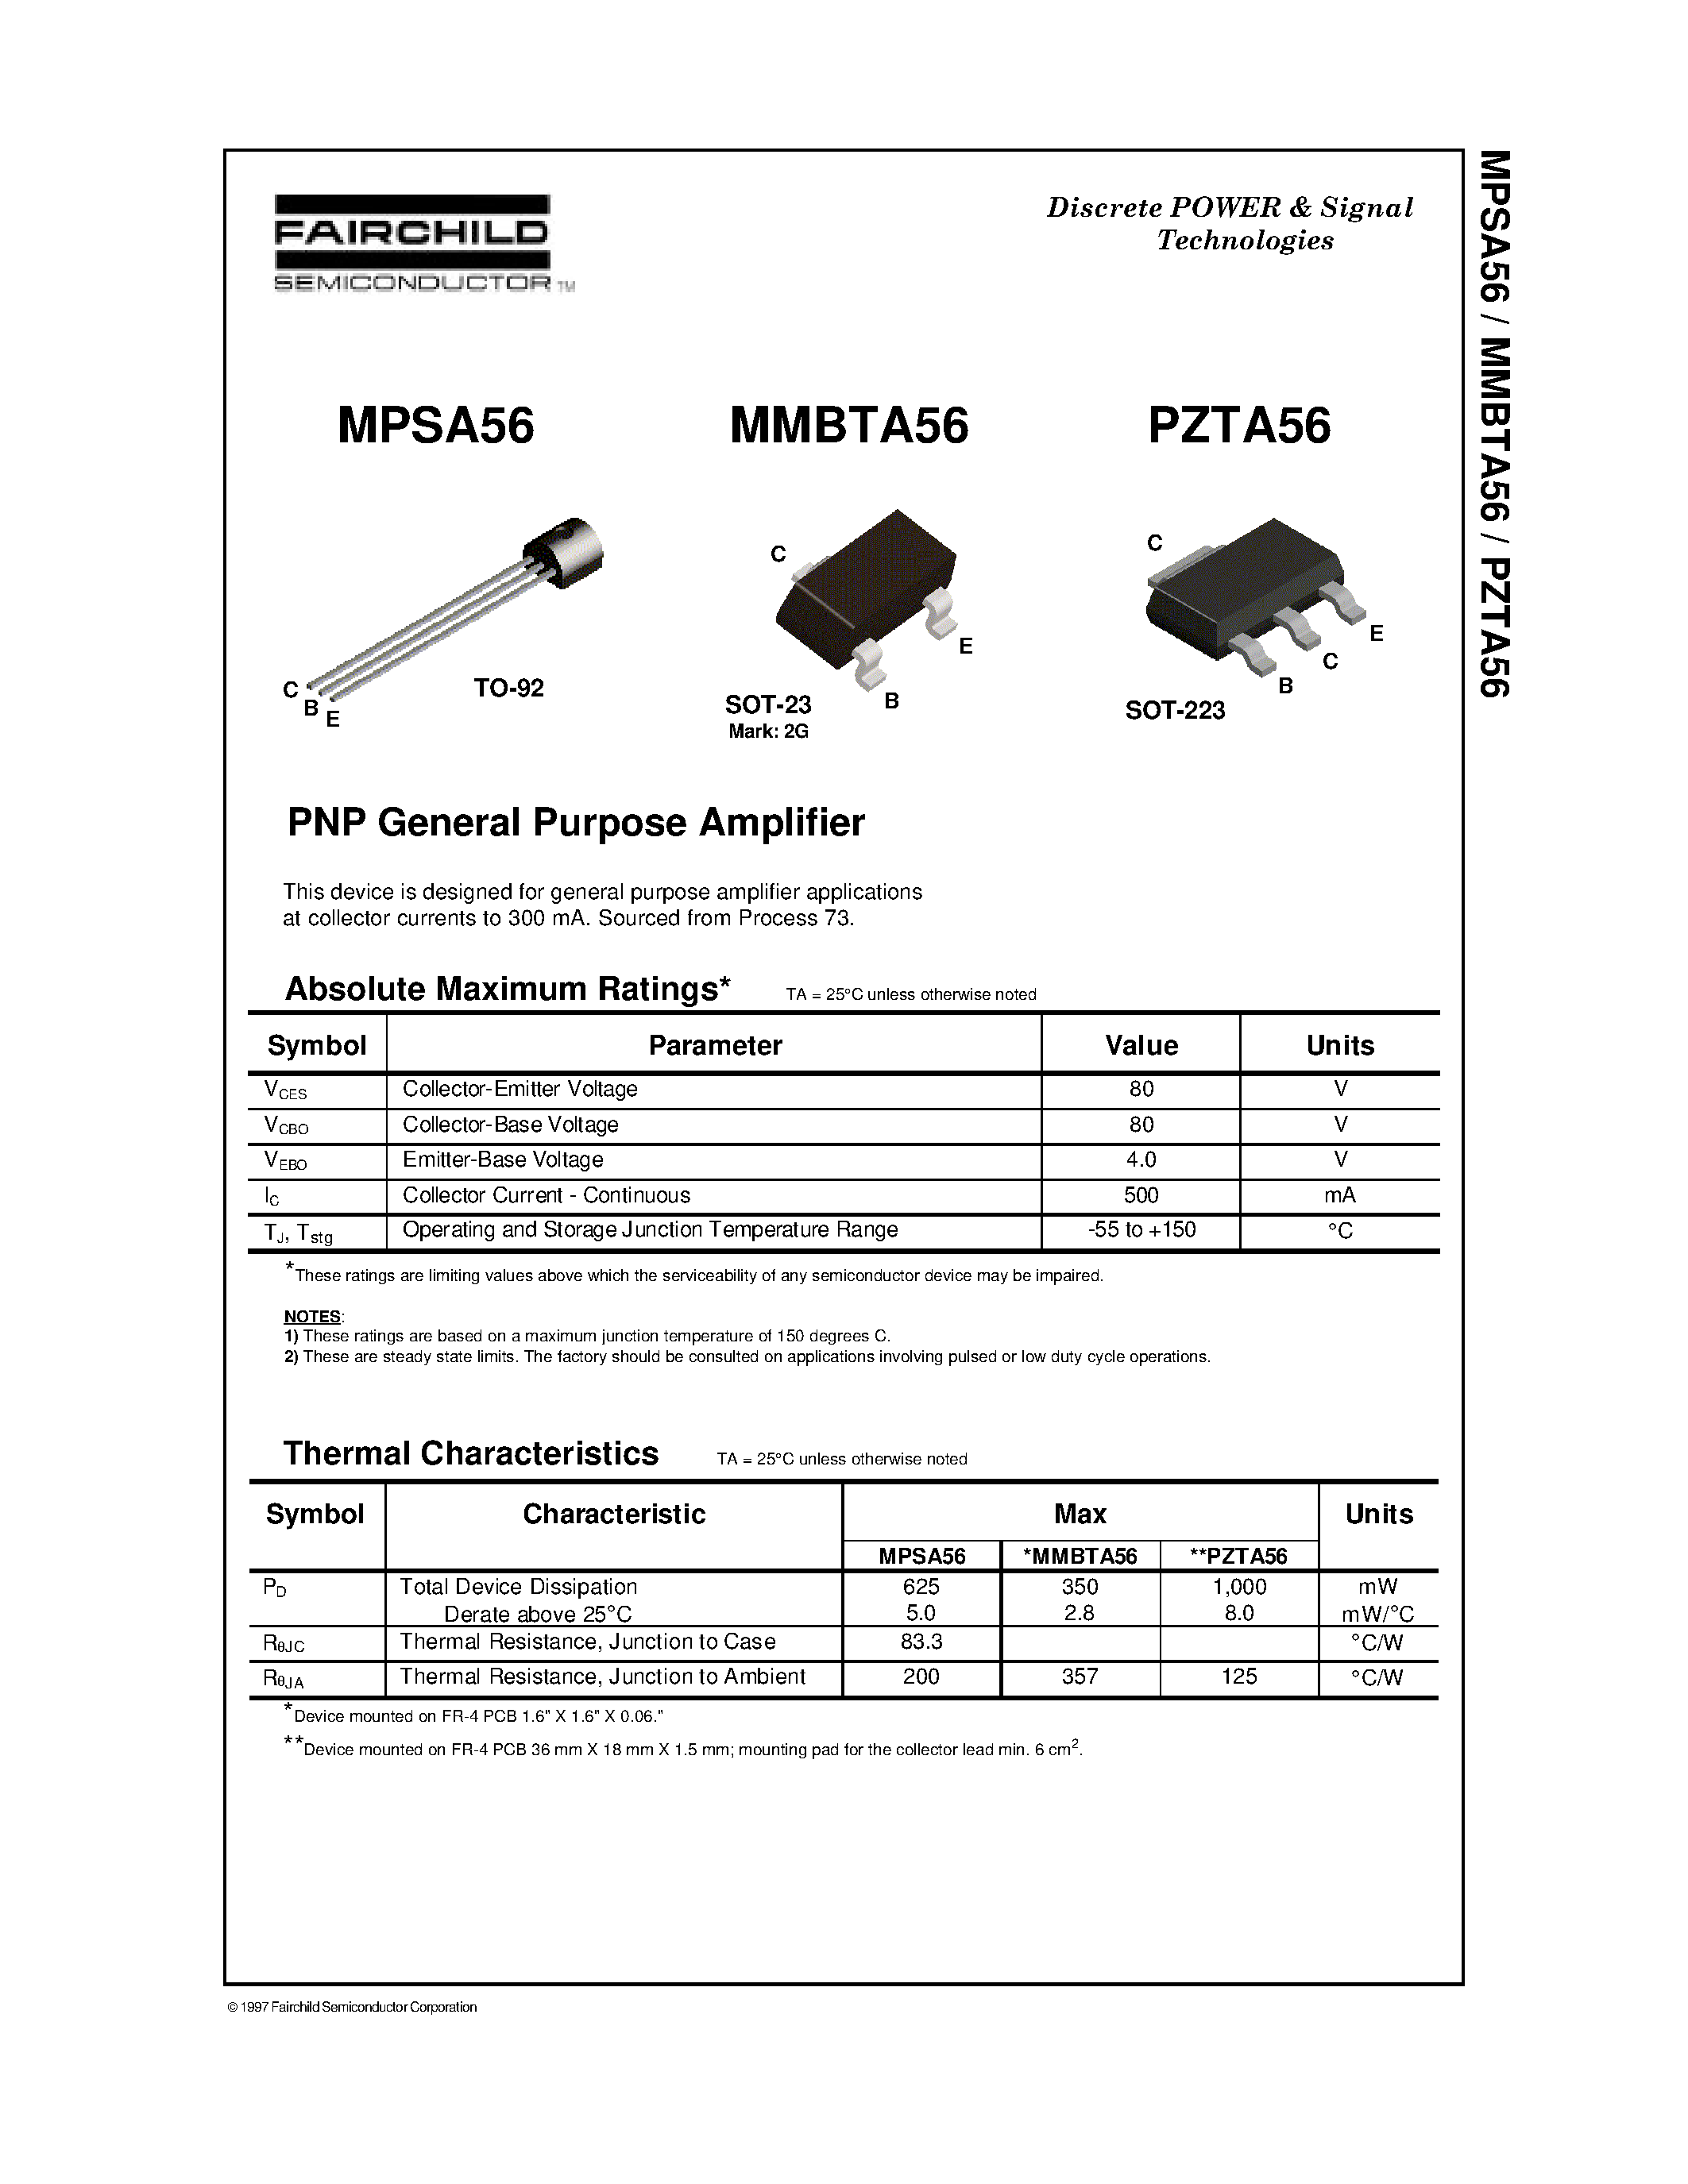 Datasheet PZTA56 - PNP General Purpose Amplifier page 1